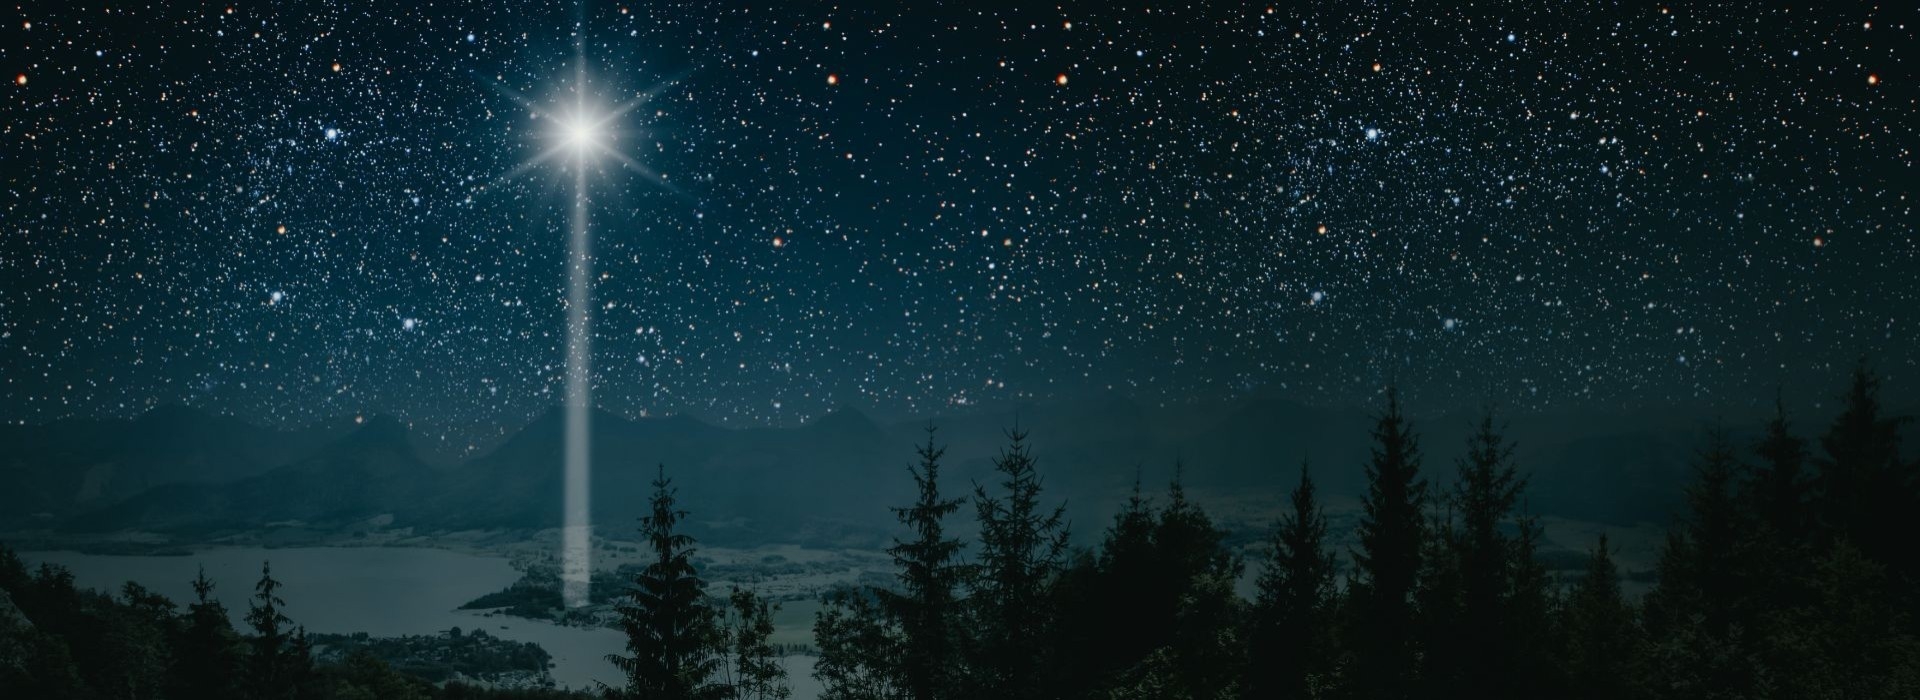 Czy współczesna astronomia potrafi wyjaśnić zjawisko gwiazdy betlejemskiej?